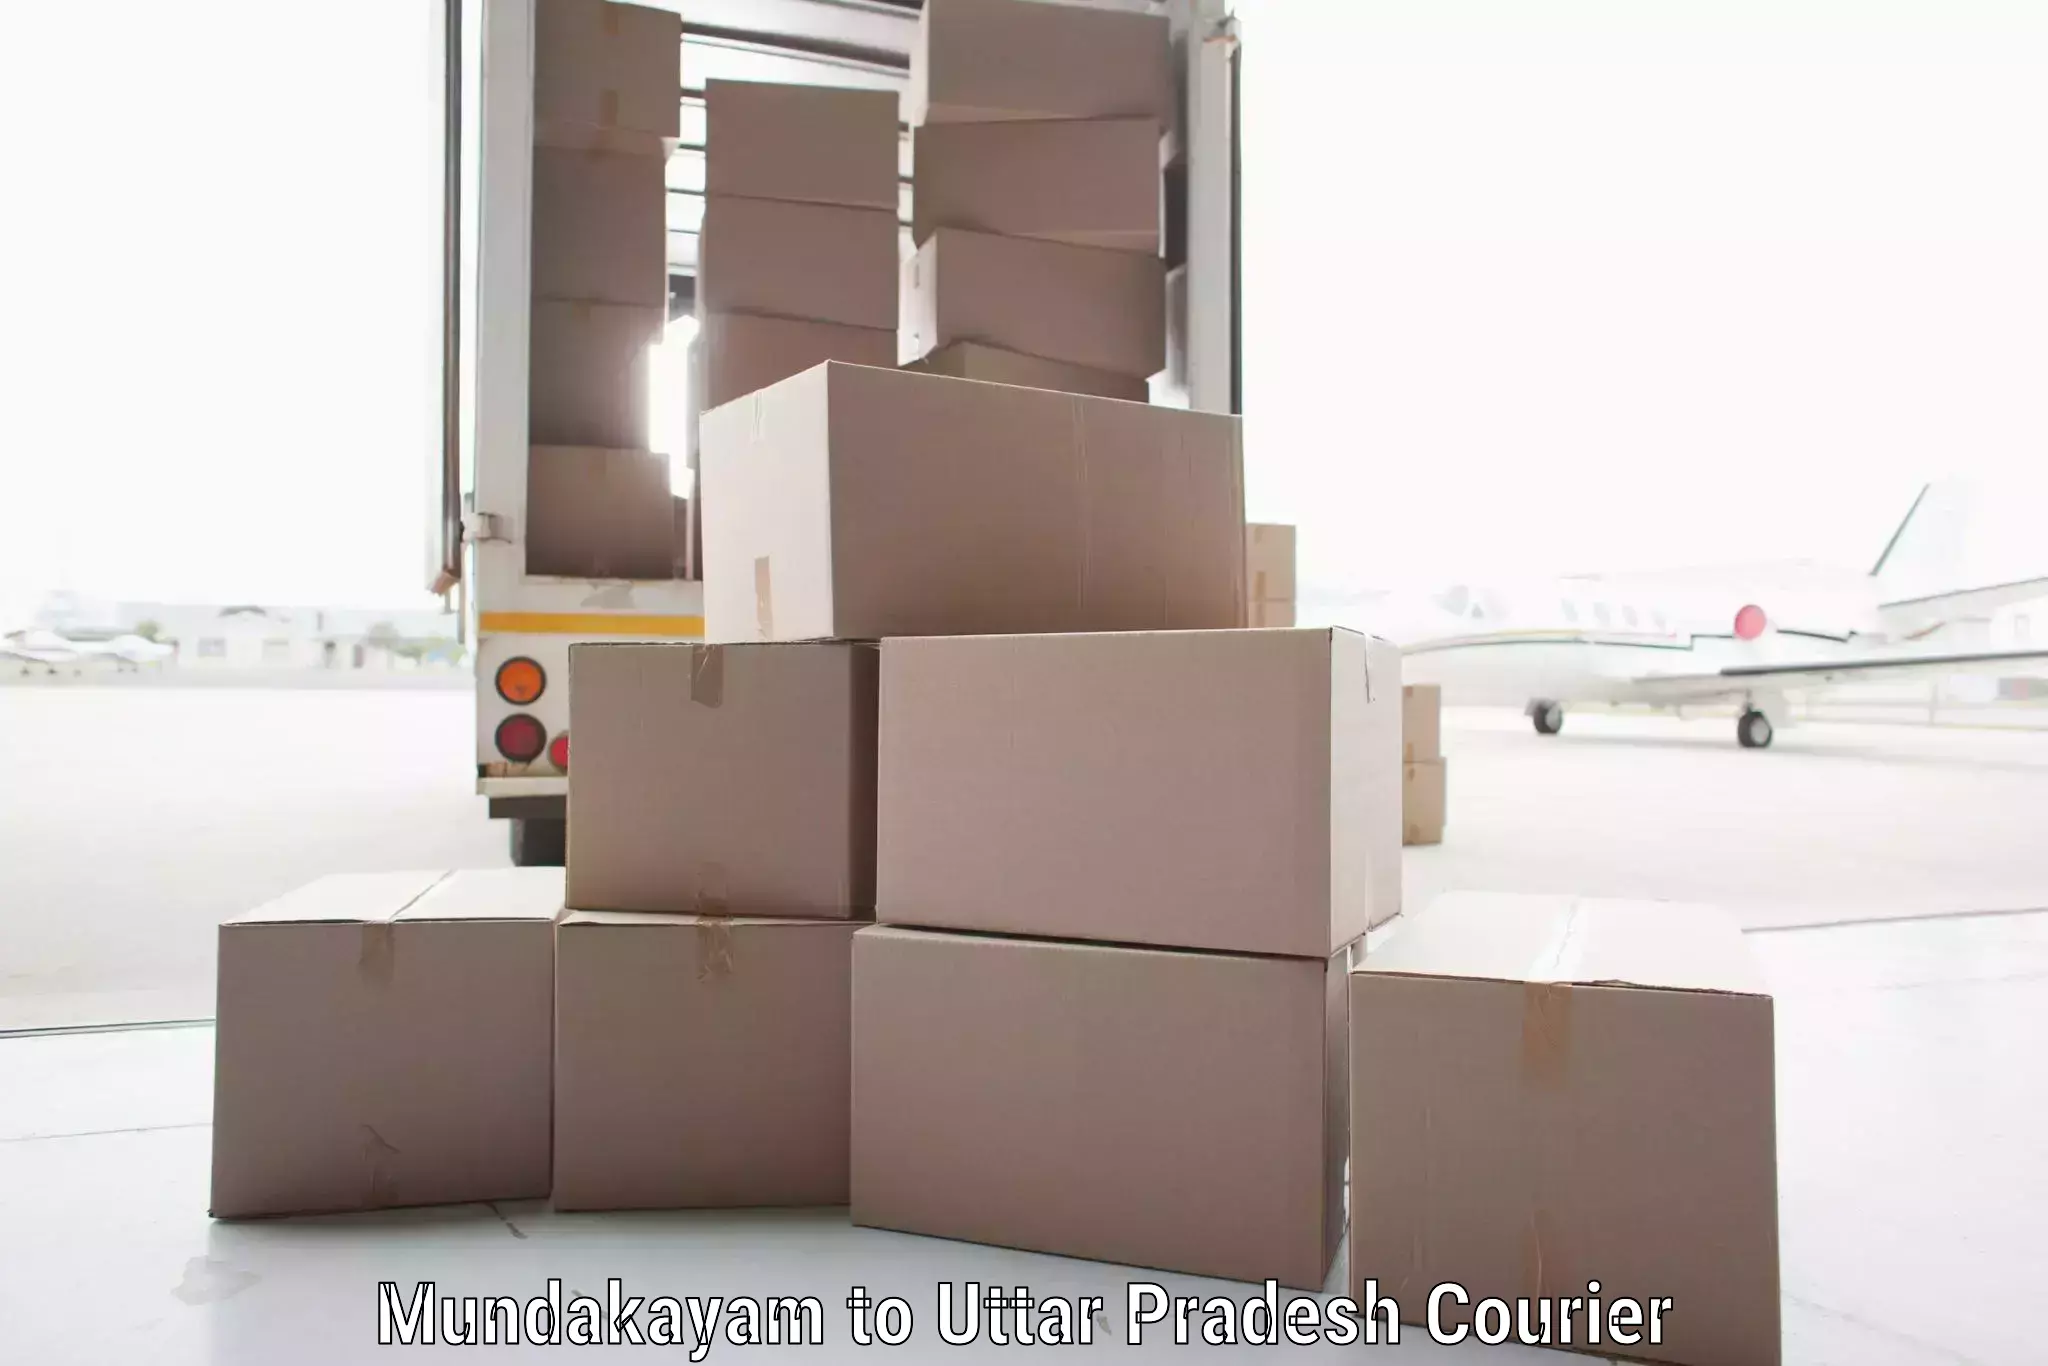 Cargo delivery service Mundakayam to Uttar Pradesh